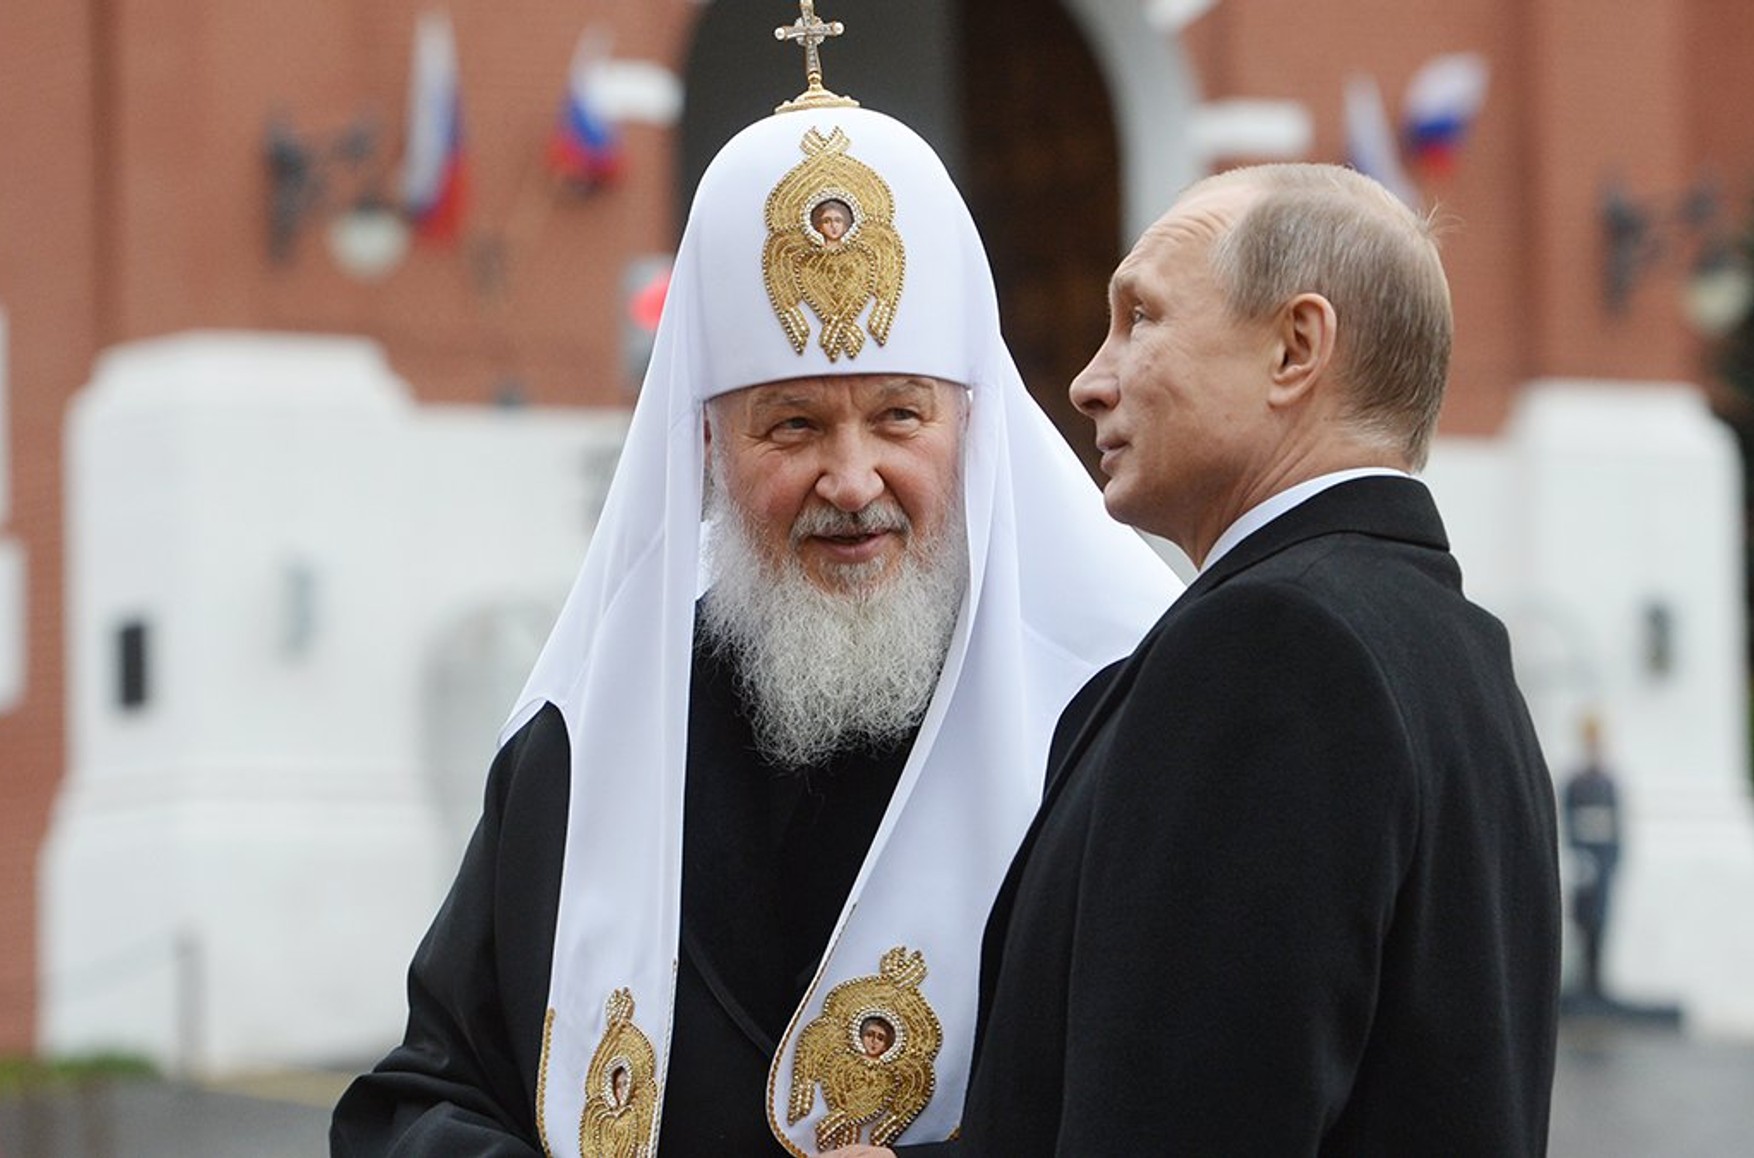 Патриарх Кирилл прокомментировал решение Украинской православной церкви о полной независимости от РПЦ